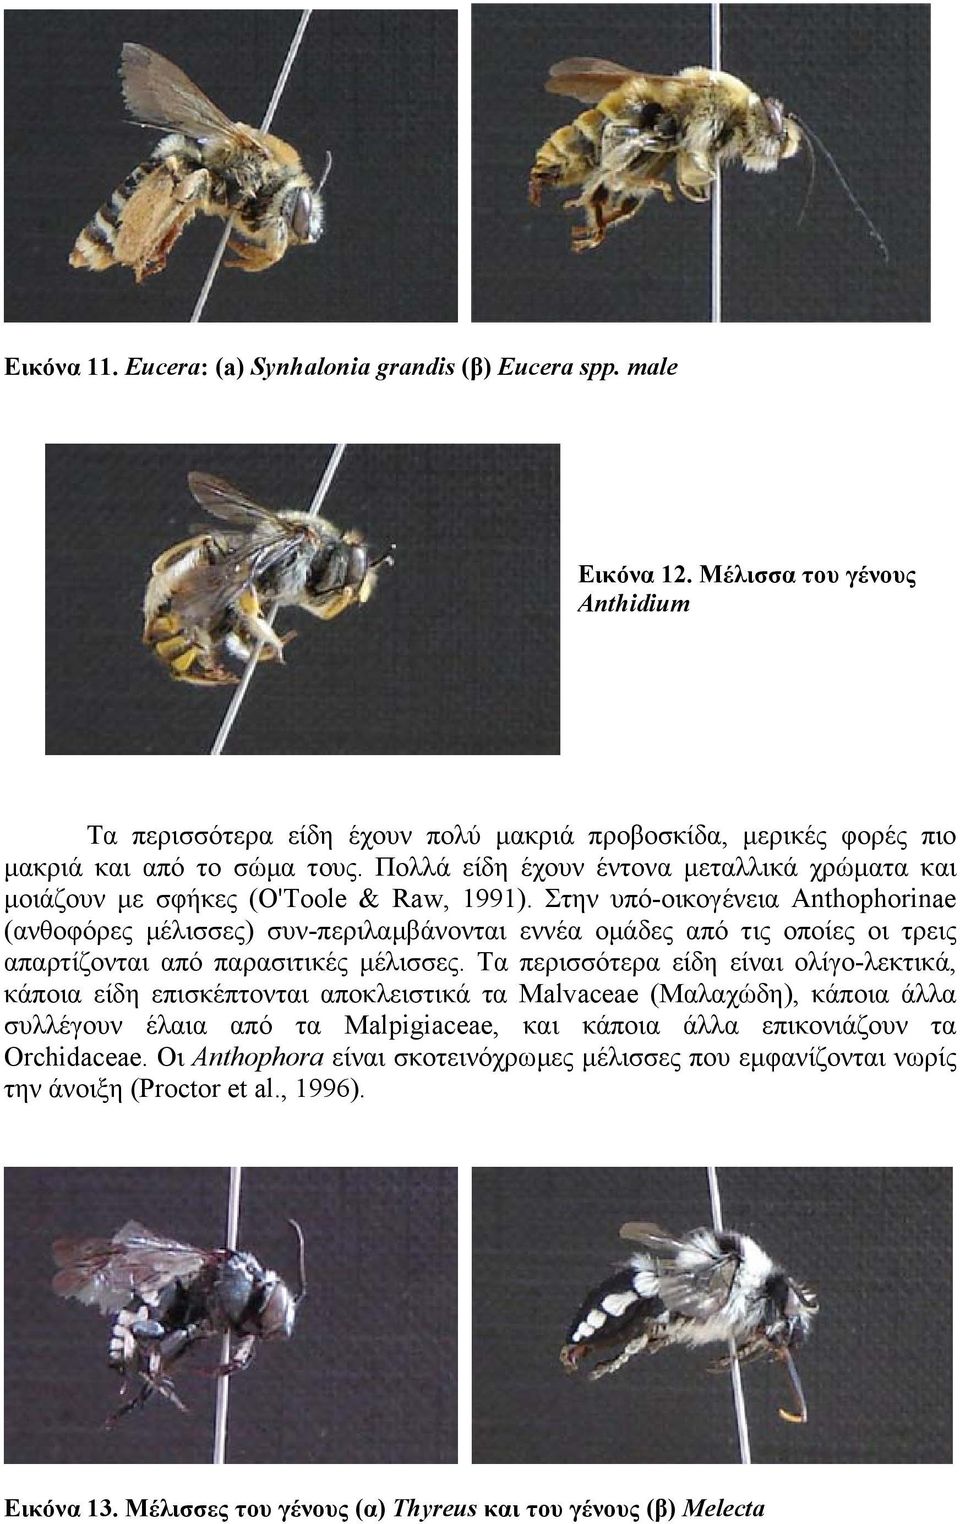 Στην υπό-οικoγένεια Anthophorinae (ανθοφόρες µέλισσες) συν-περιλαµβάνονται εννέα οµάδες από τις οποίες οι τρεις απαρτίζονται από παρασιτικές µέλισσες.